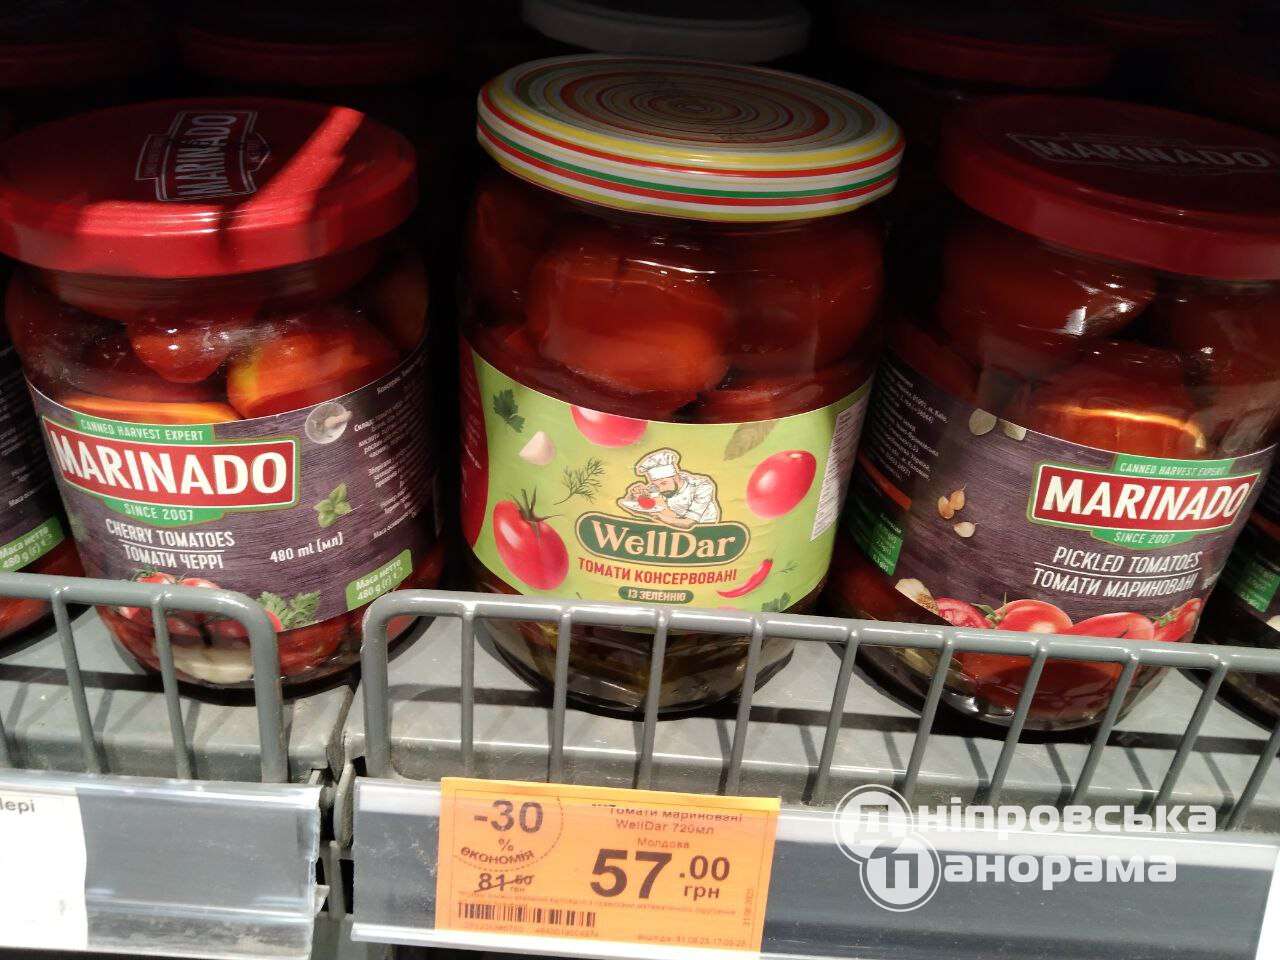 томати ціна